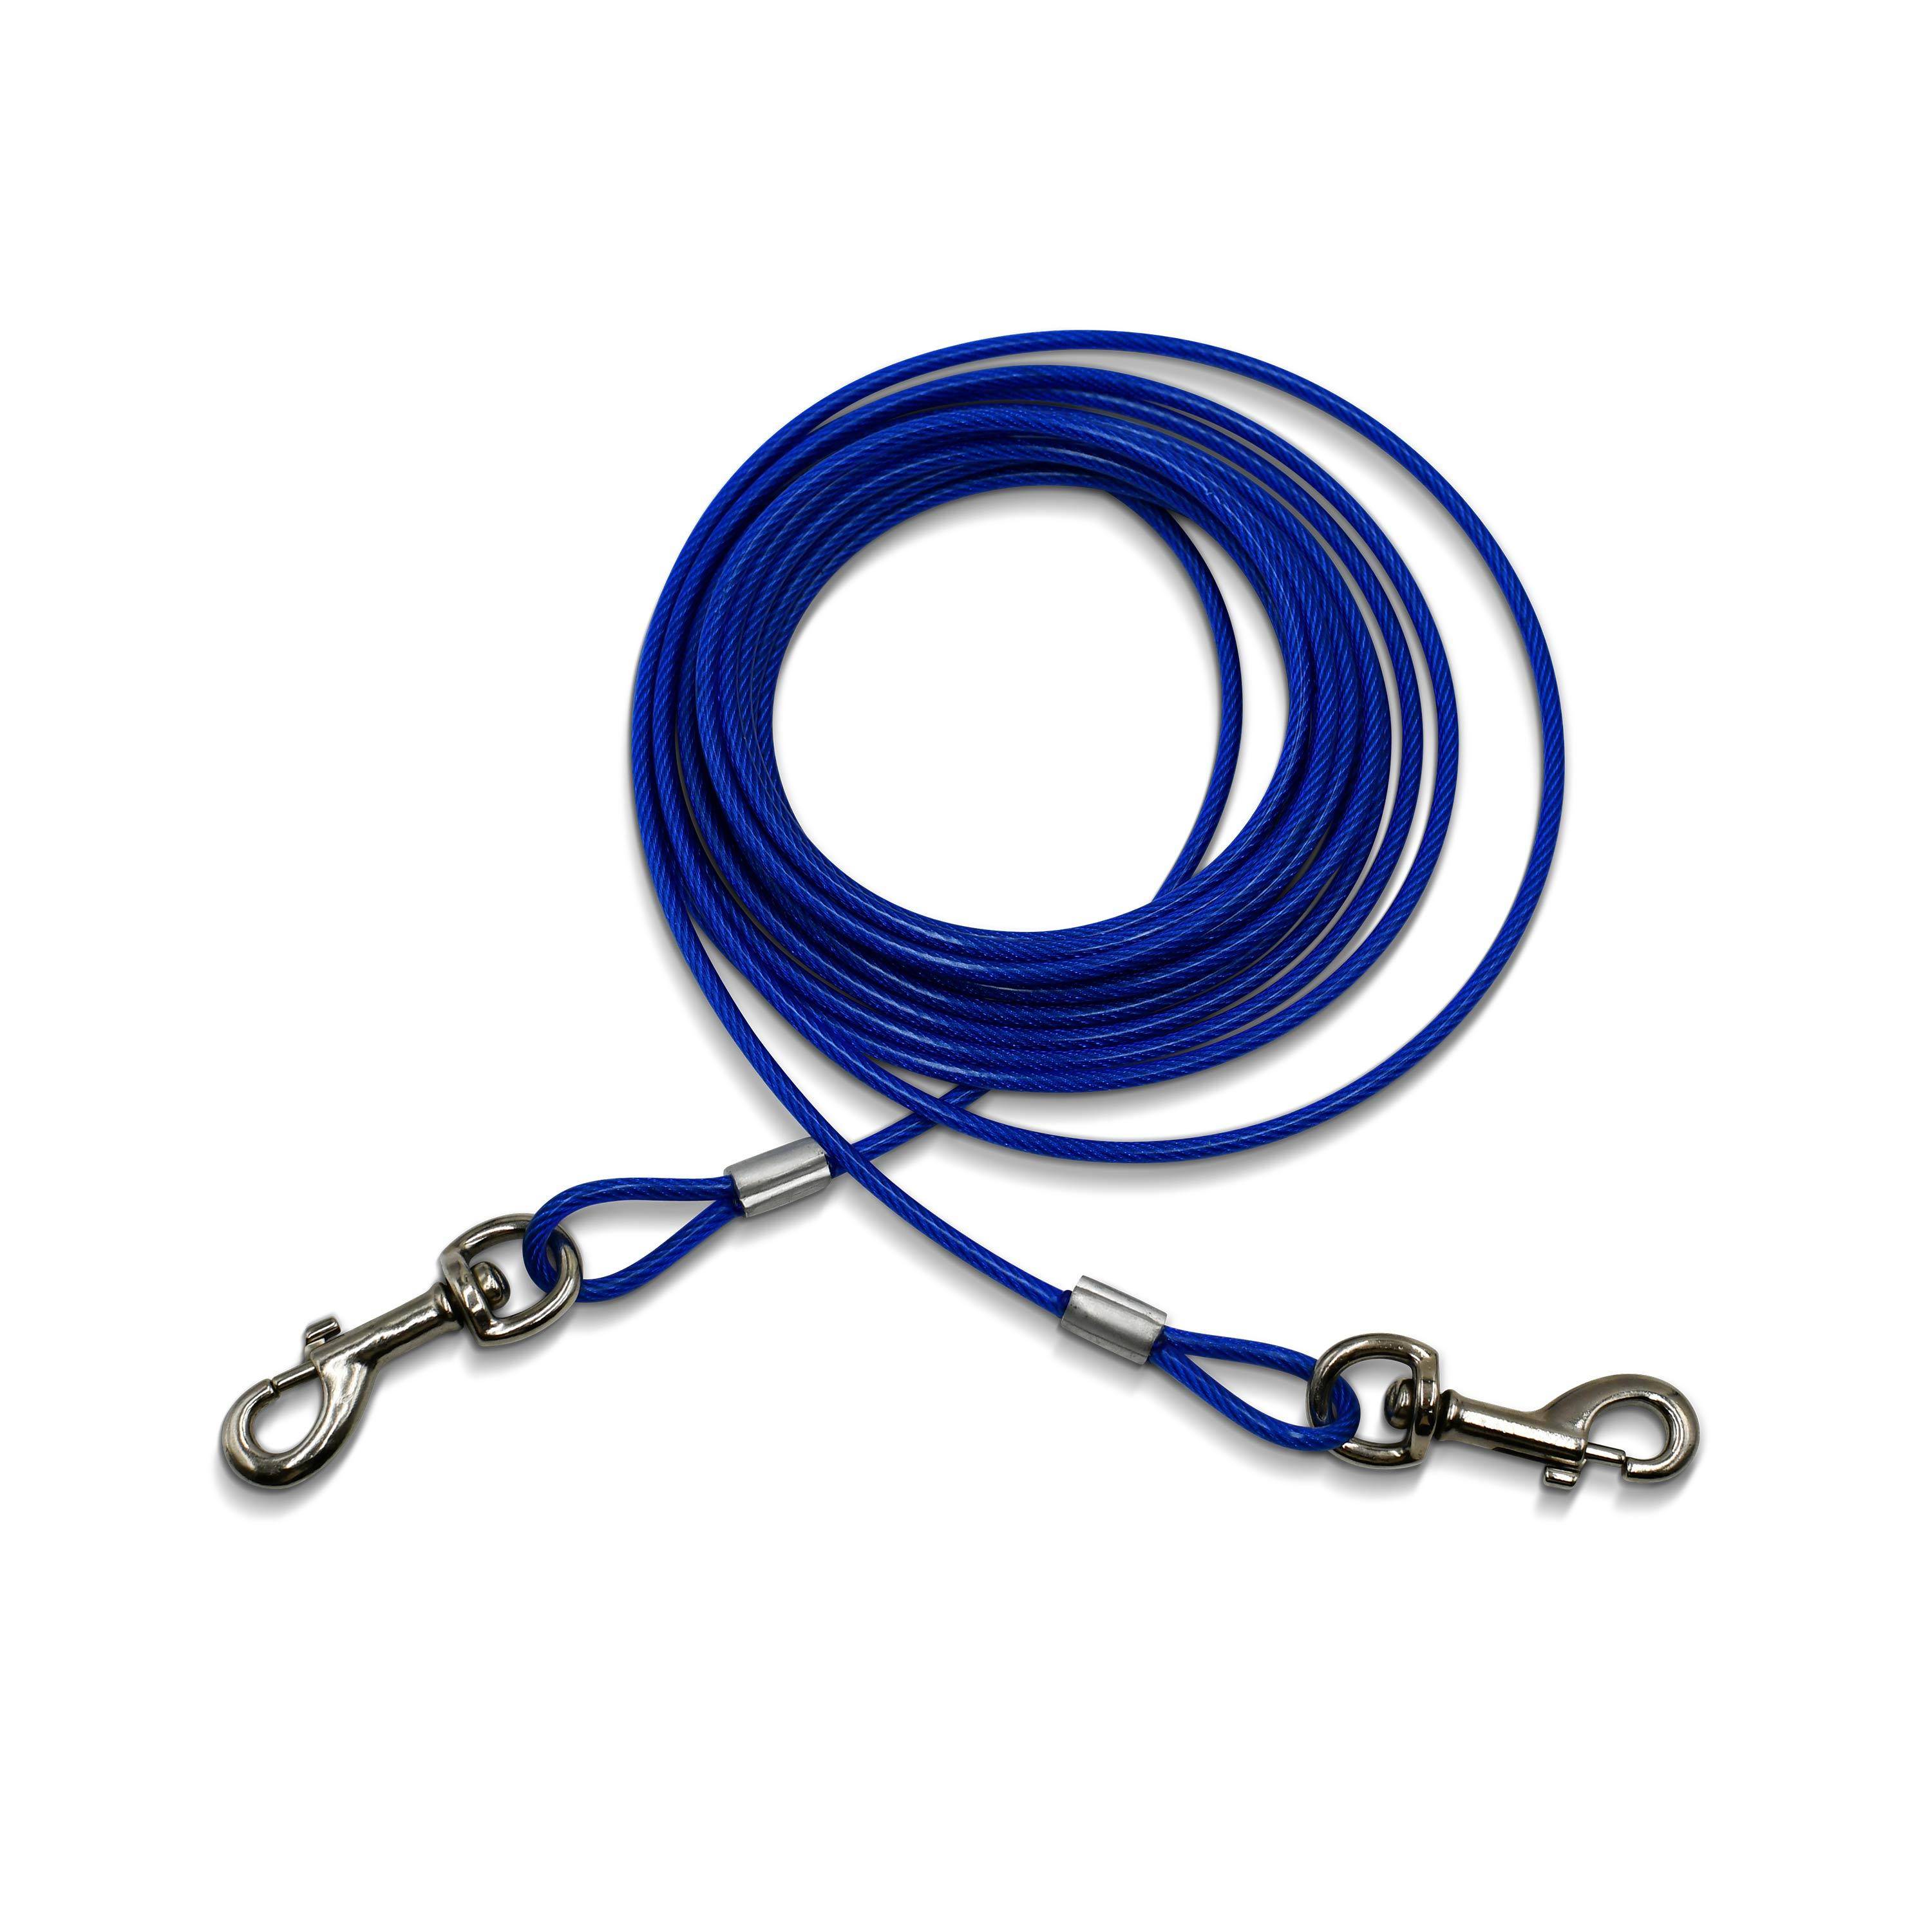 Câble gainé de 6m de long et 5mm d’épaisseur bleu, avec mousquetons Photo1